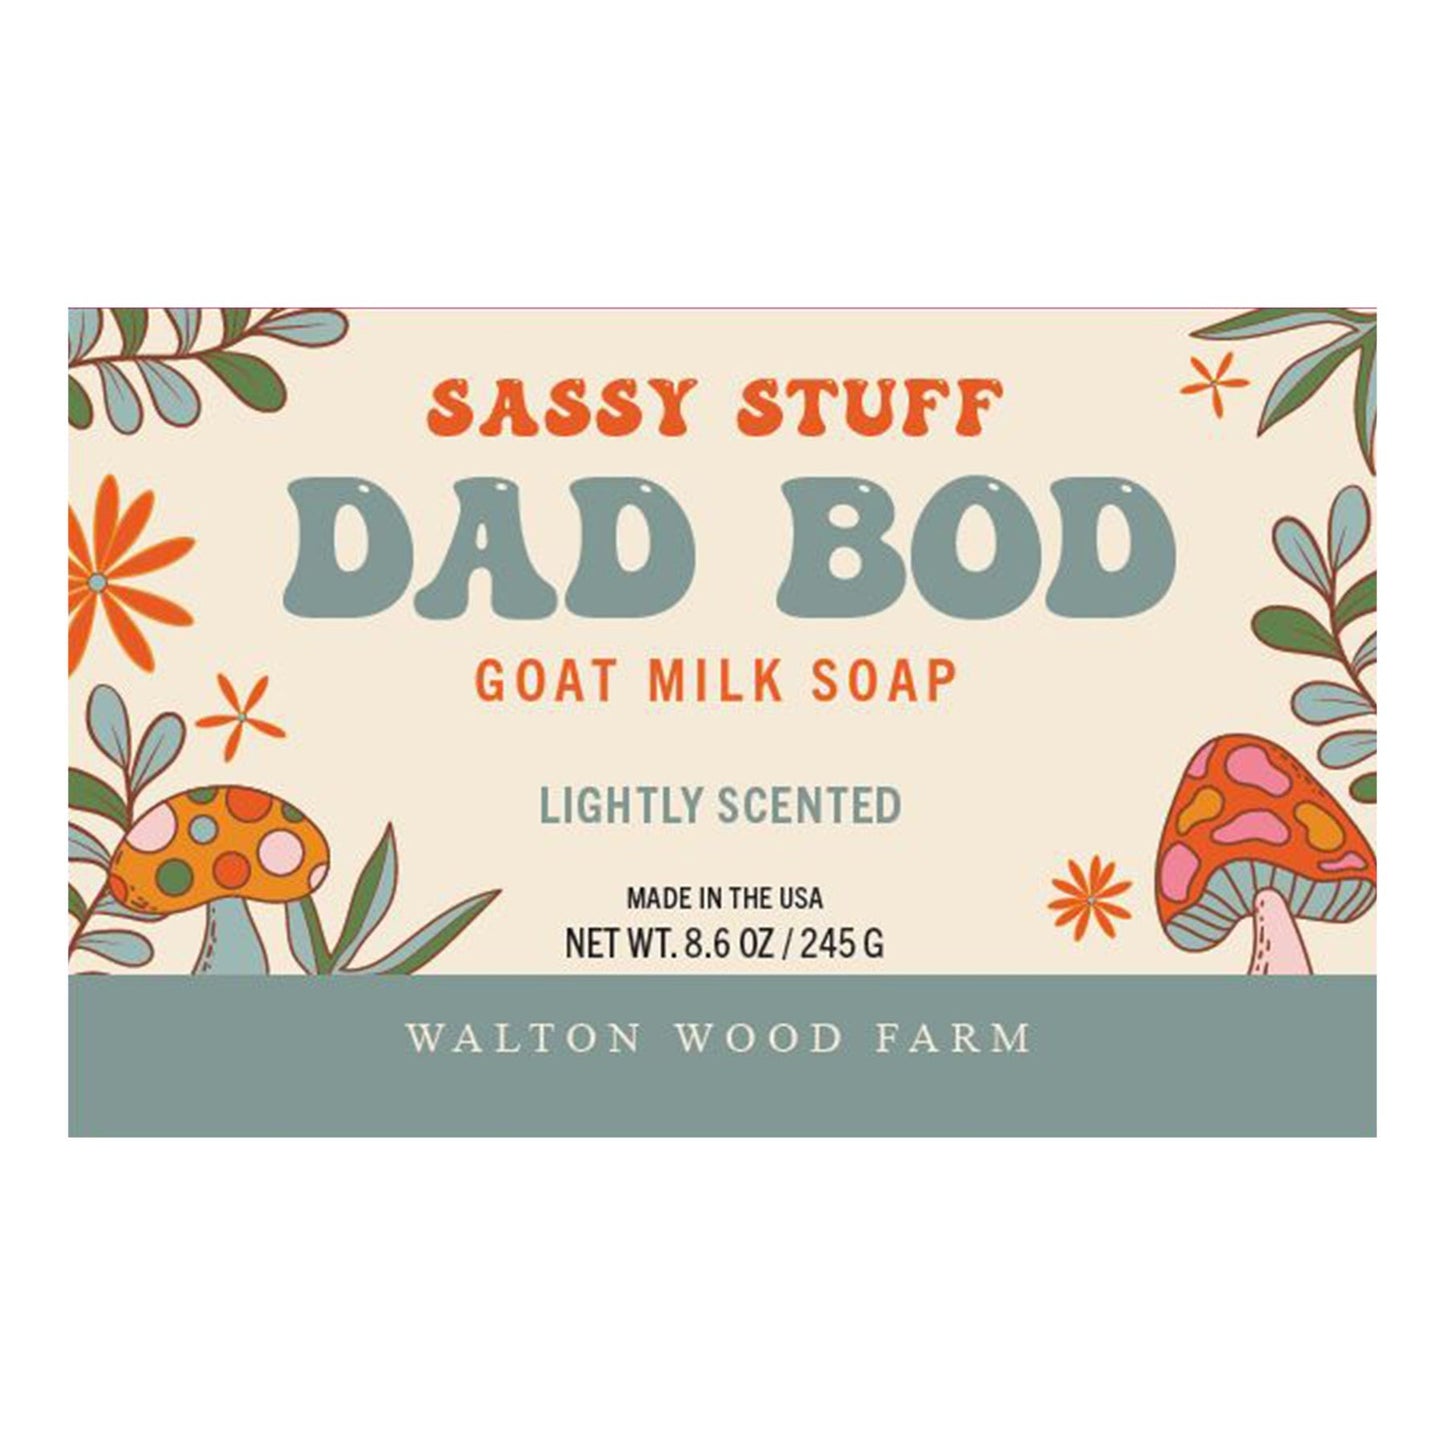 Dad Bod Soap Bar